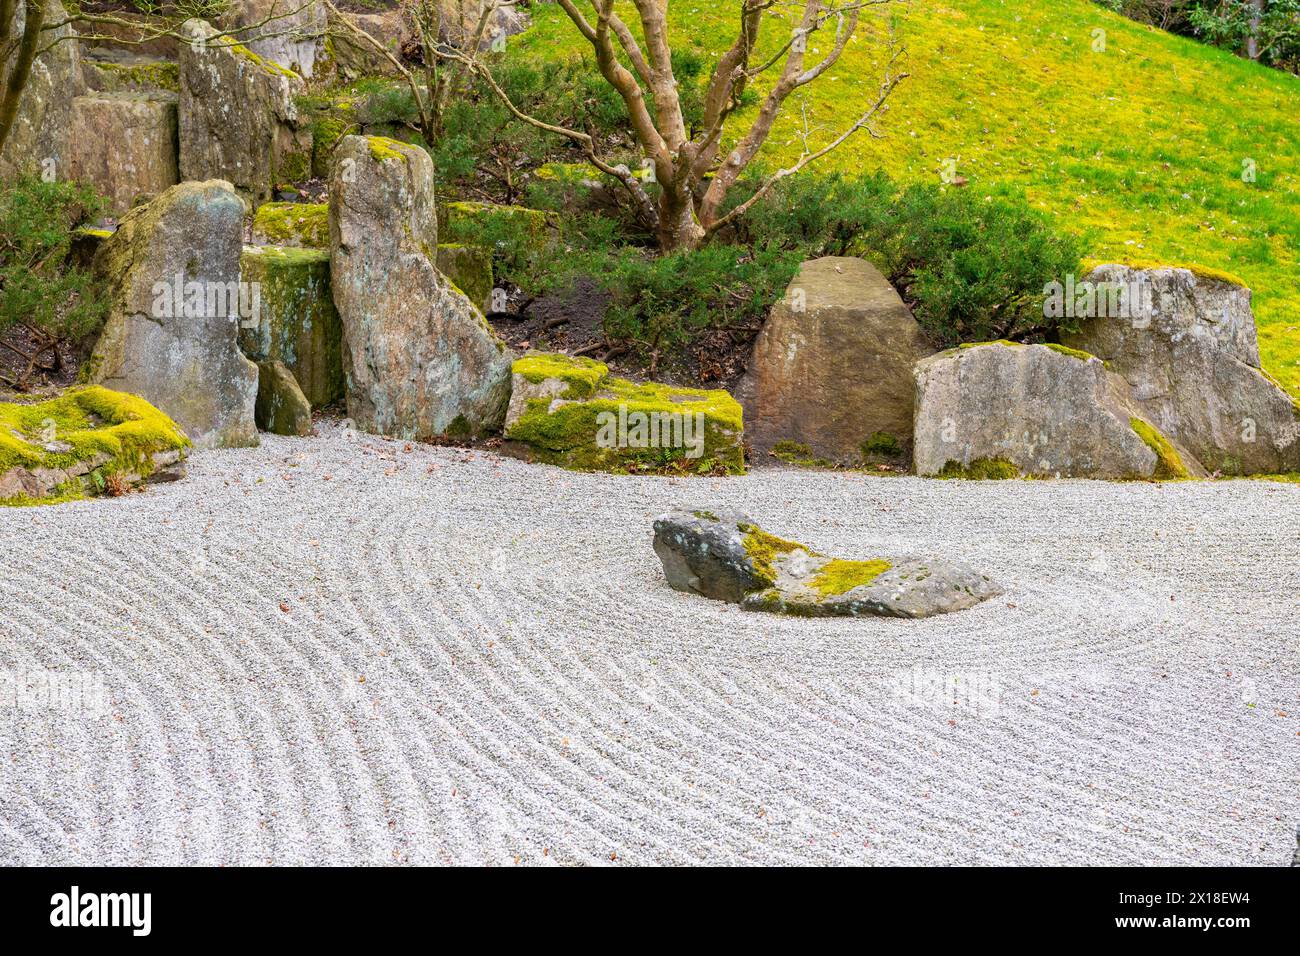 Jardín zen, guijarros rastrillados tradicionalmente, jardín japonés, jardines del mundo, Berlín, Alemania, Europa Foto de stock